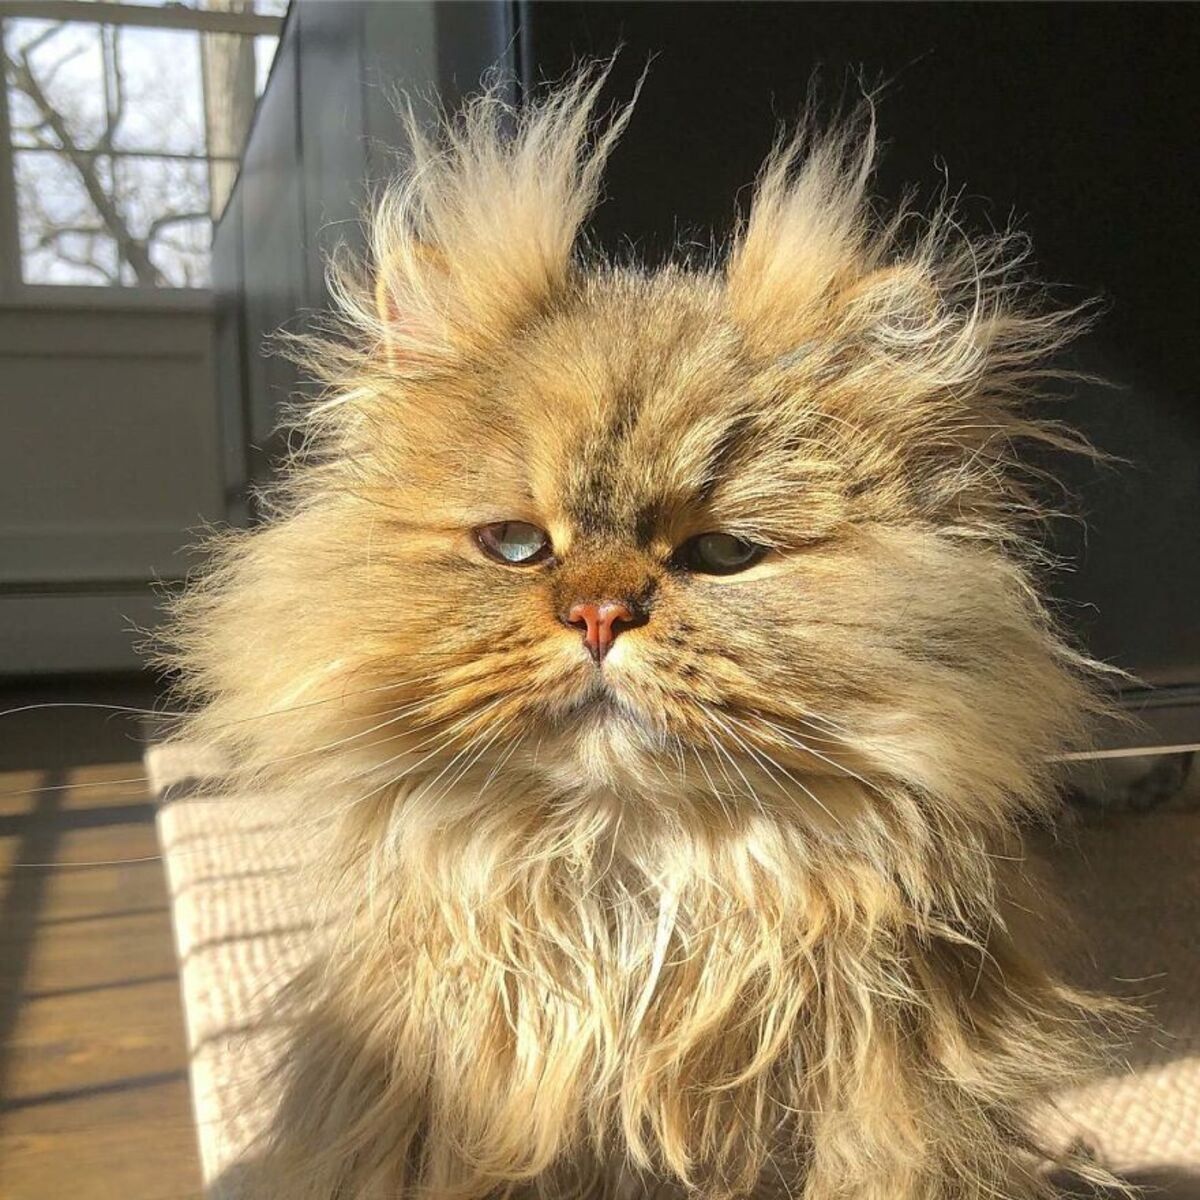 Утро понедельника: кот всегда выглядит так, будто только что проснулся после веселых выходных